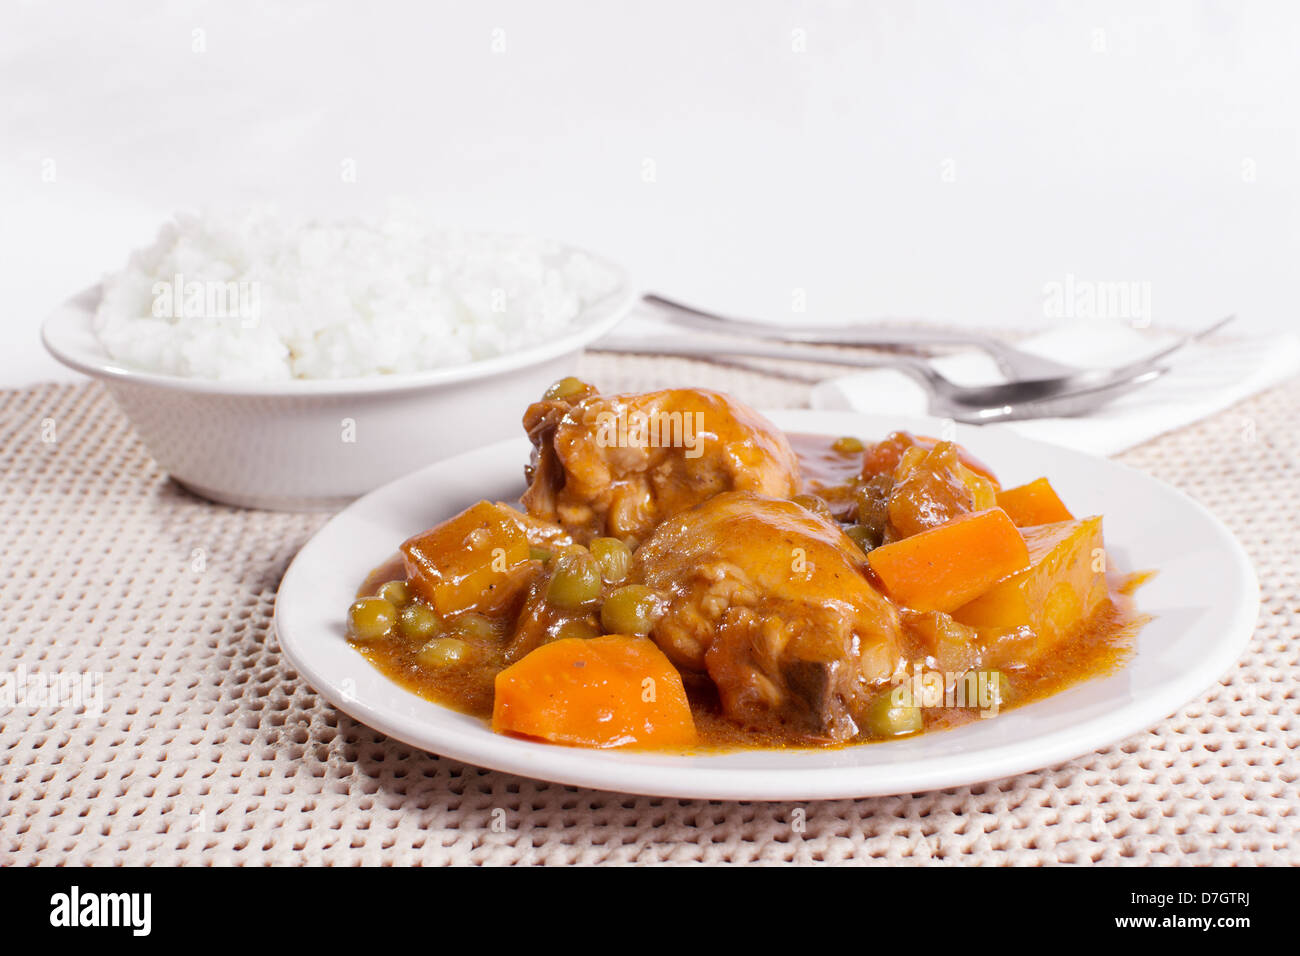 Ragoût de poulet avec pommes de terre, carottes, petits pois à la sauce tomate. bol de riz vapeur, fourchette et cuillère en arrière-plan. Banque D'Images